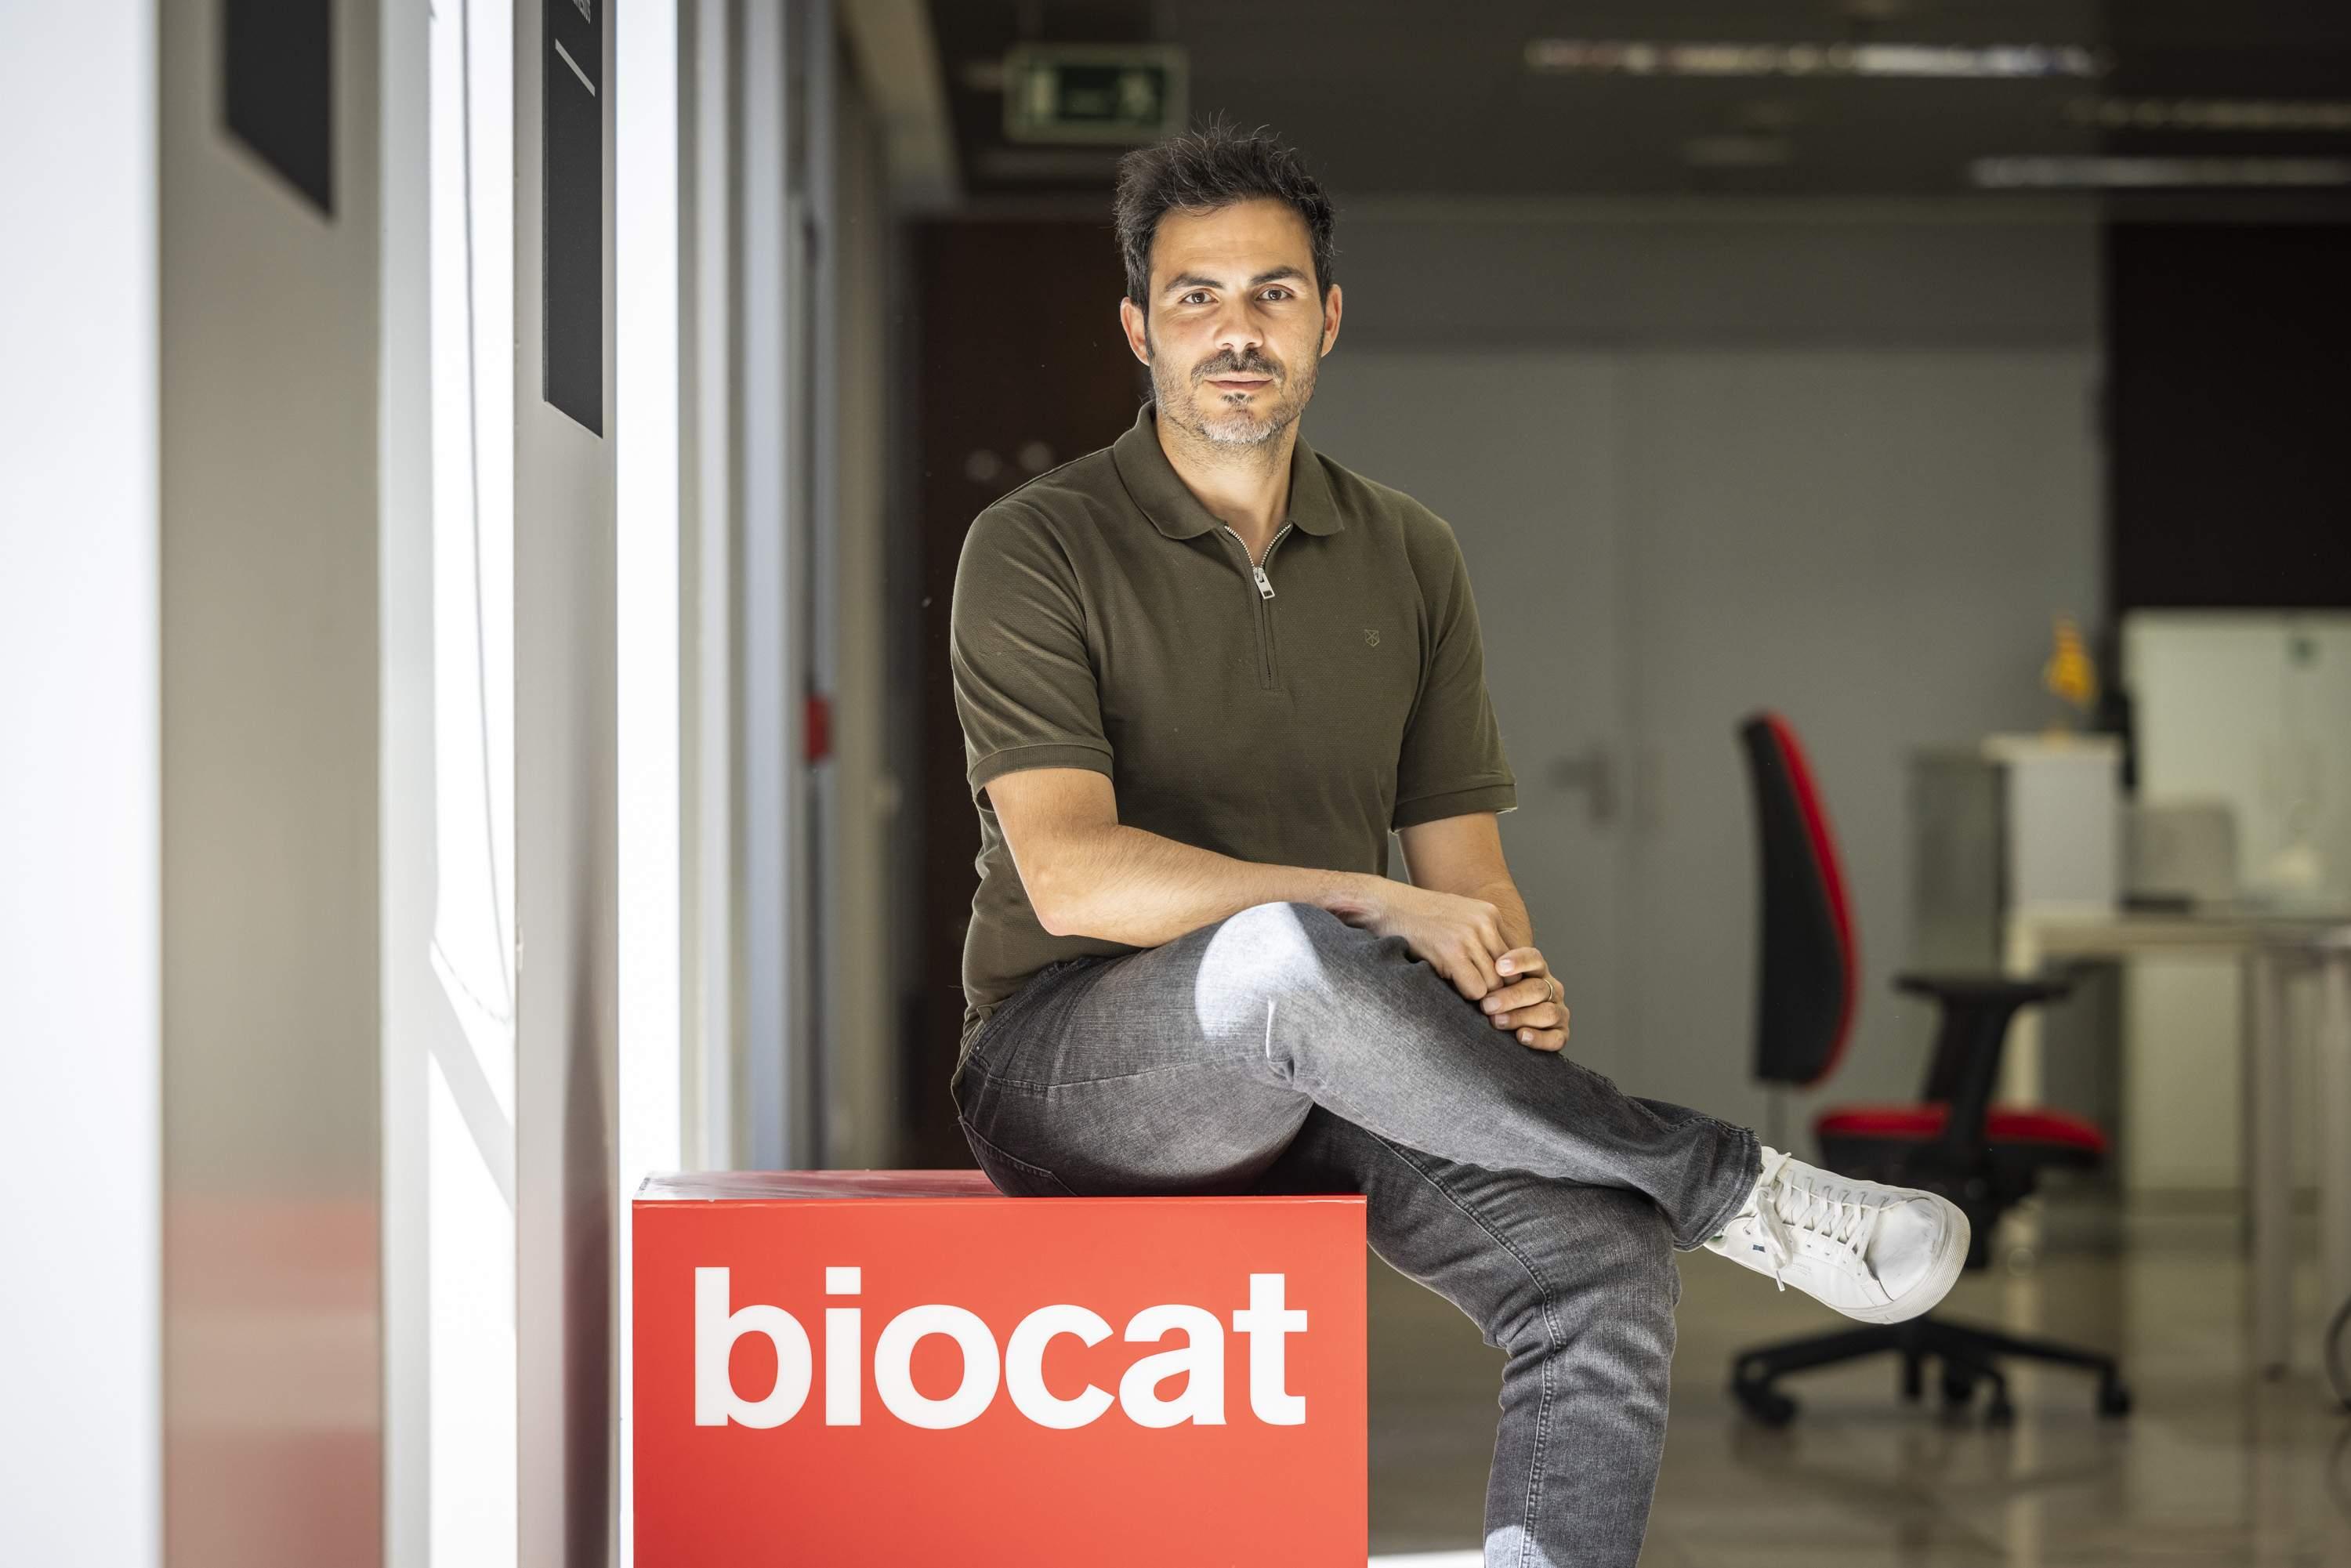 Entrevista Director de Biocat01